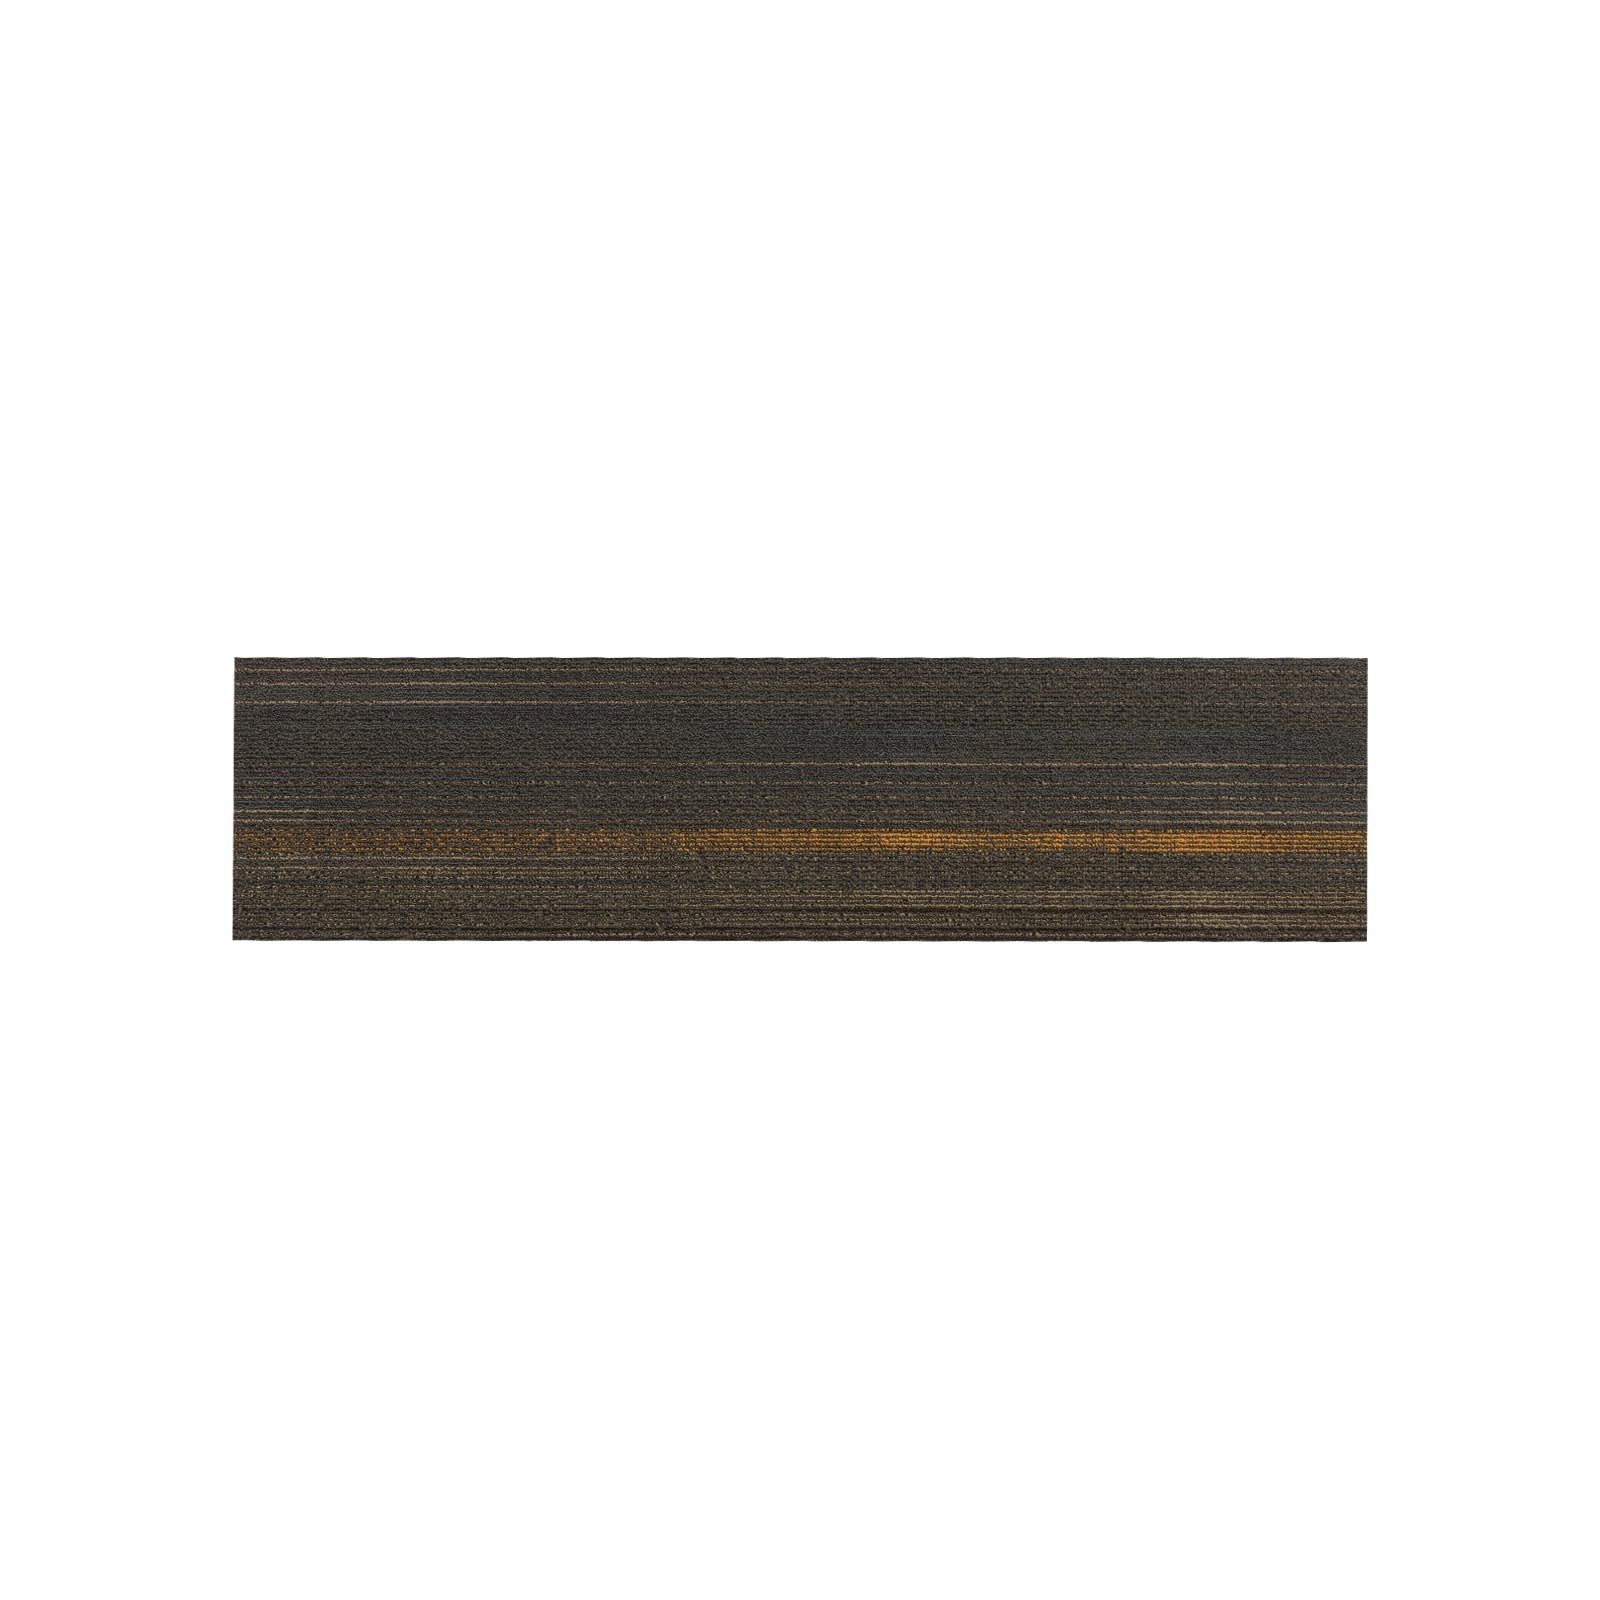 Teppichfliese Aberdeen, Erhältlich in 12 Farben, 25 x 100 cm, Teppichdiele, Fliese, Floordirekt